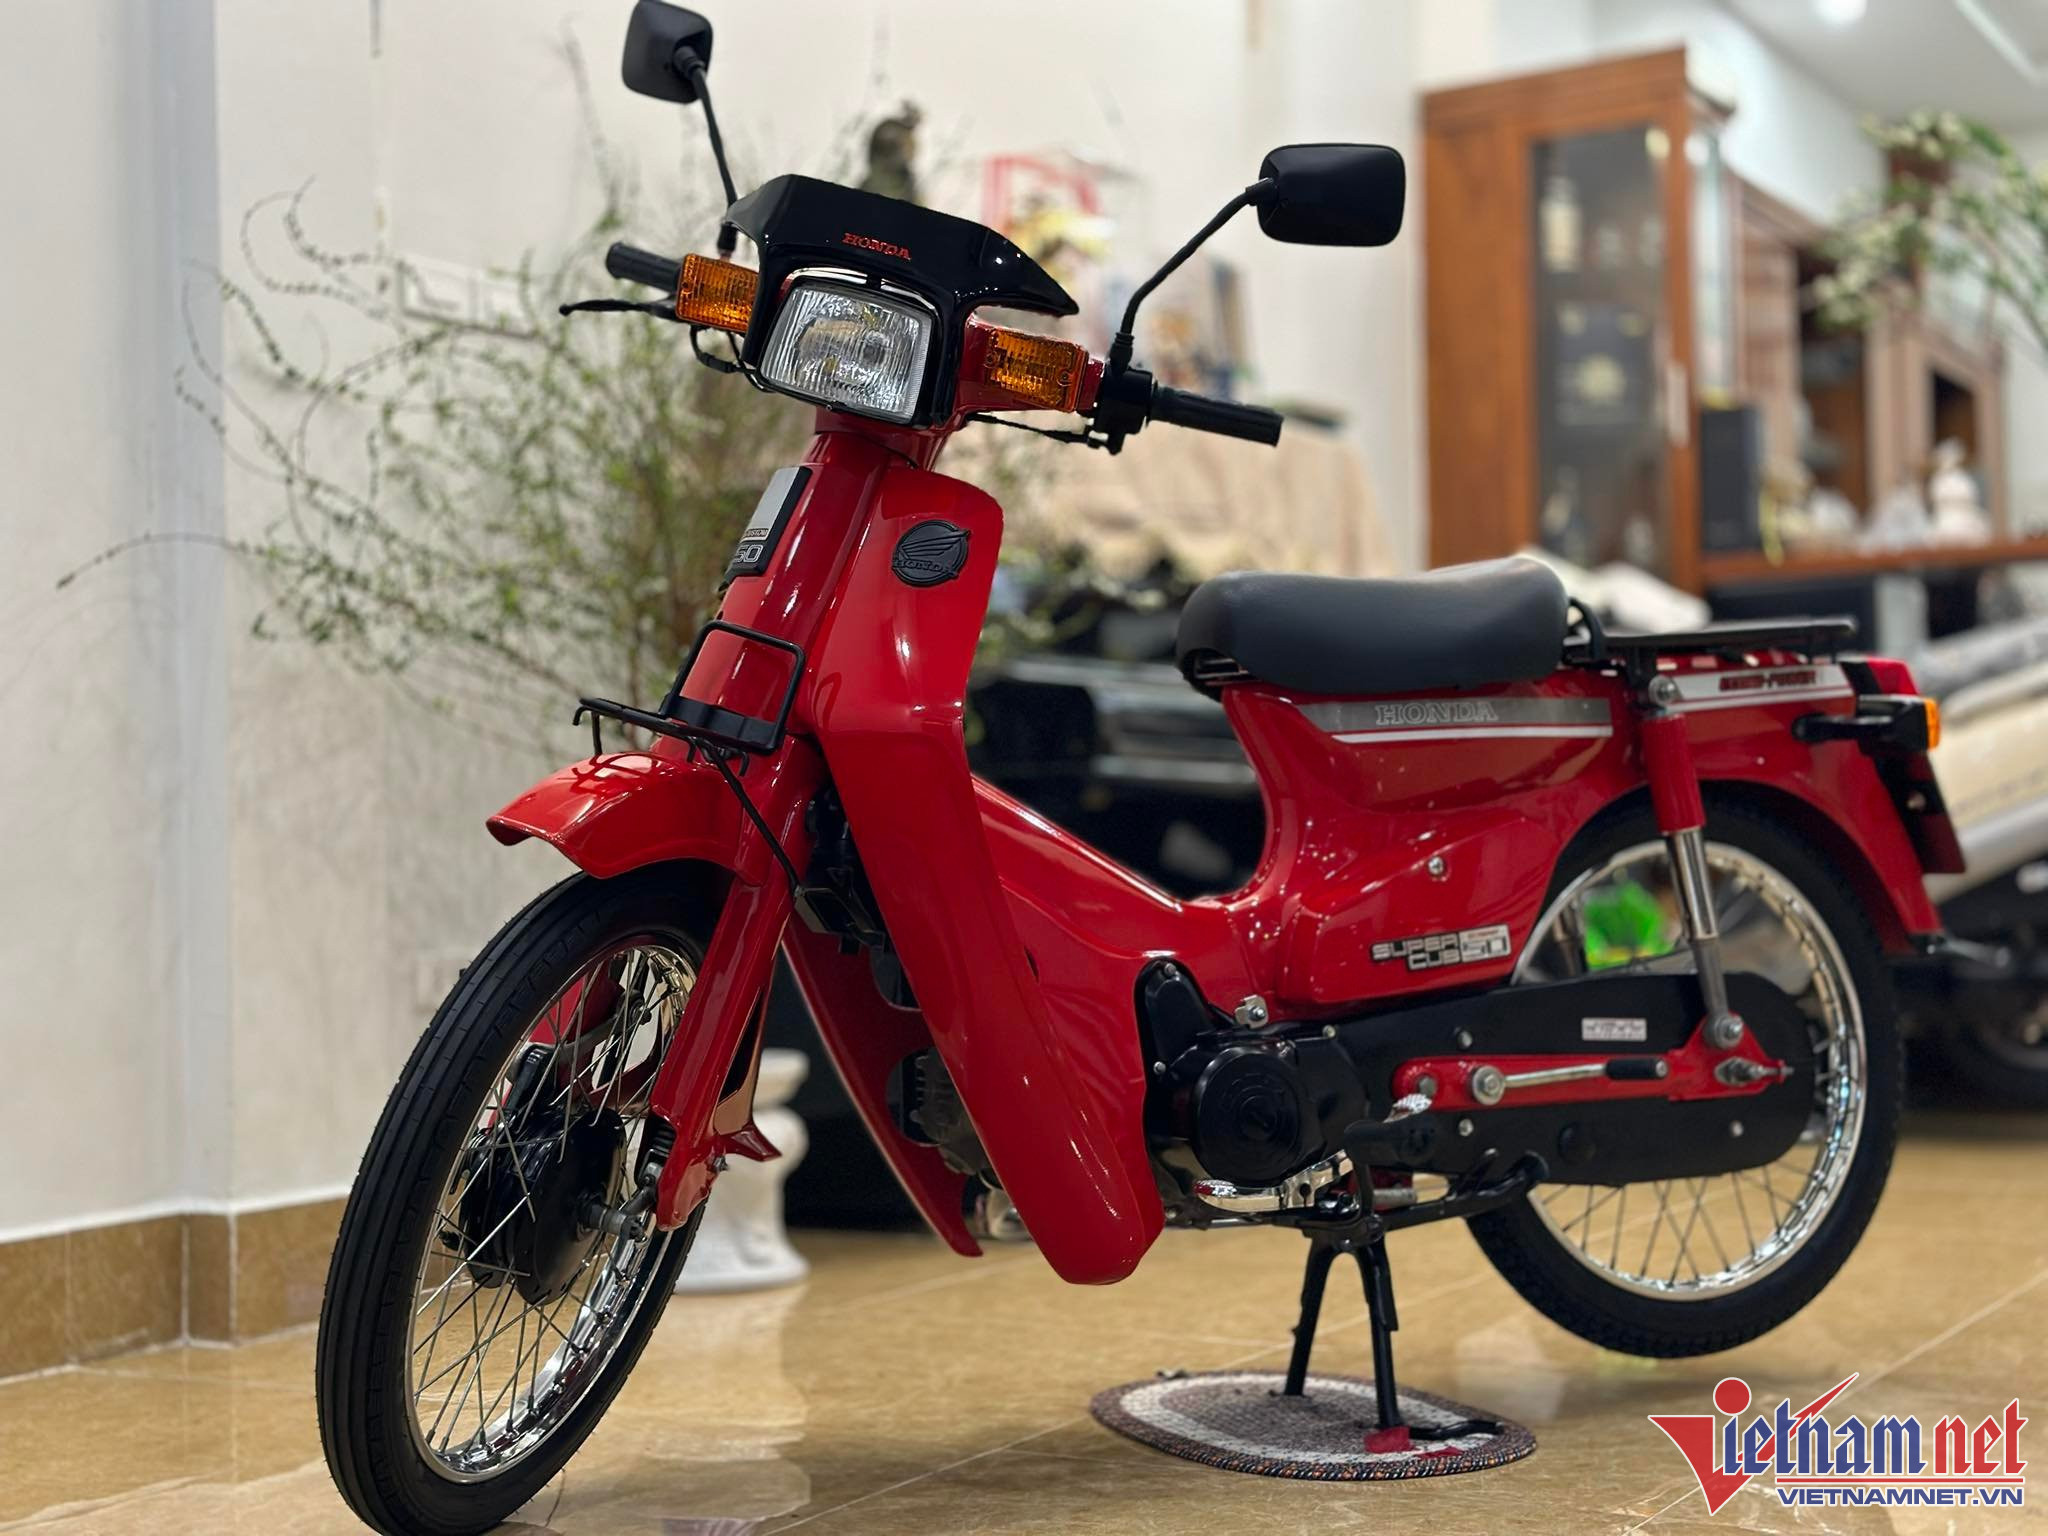 Trình làng bộ cánh mới cho 4 mẫu xe máy Honda Cub 50cc 2022